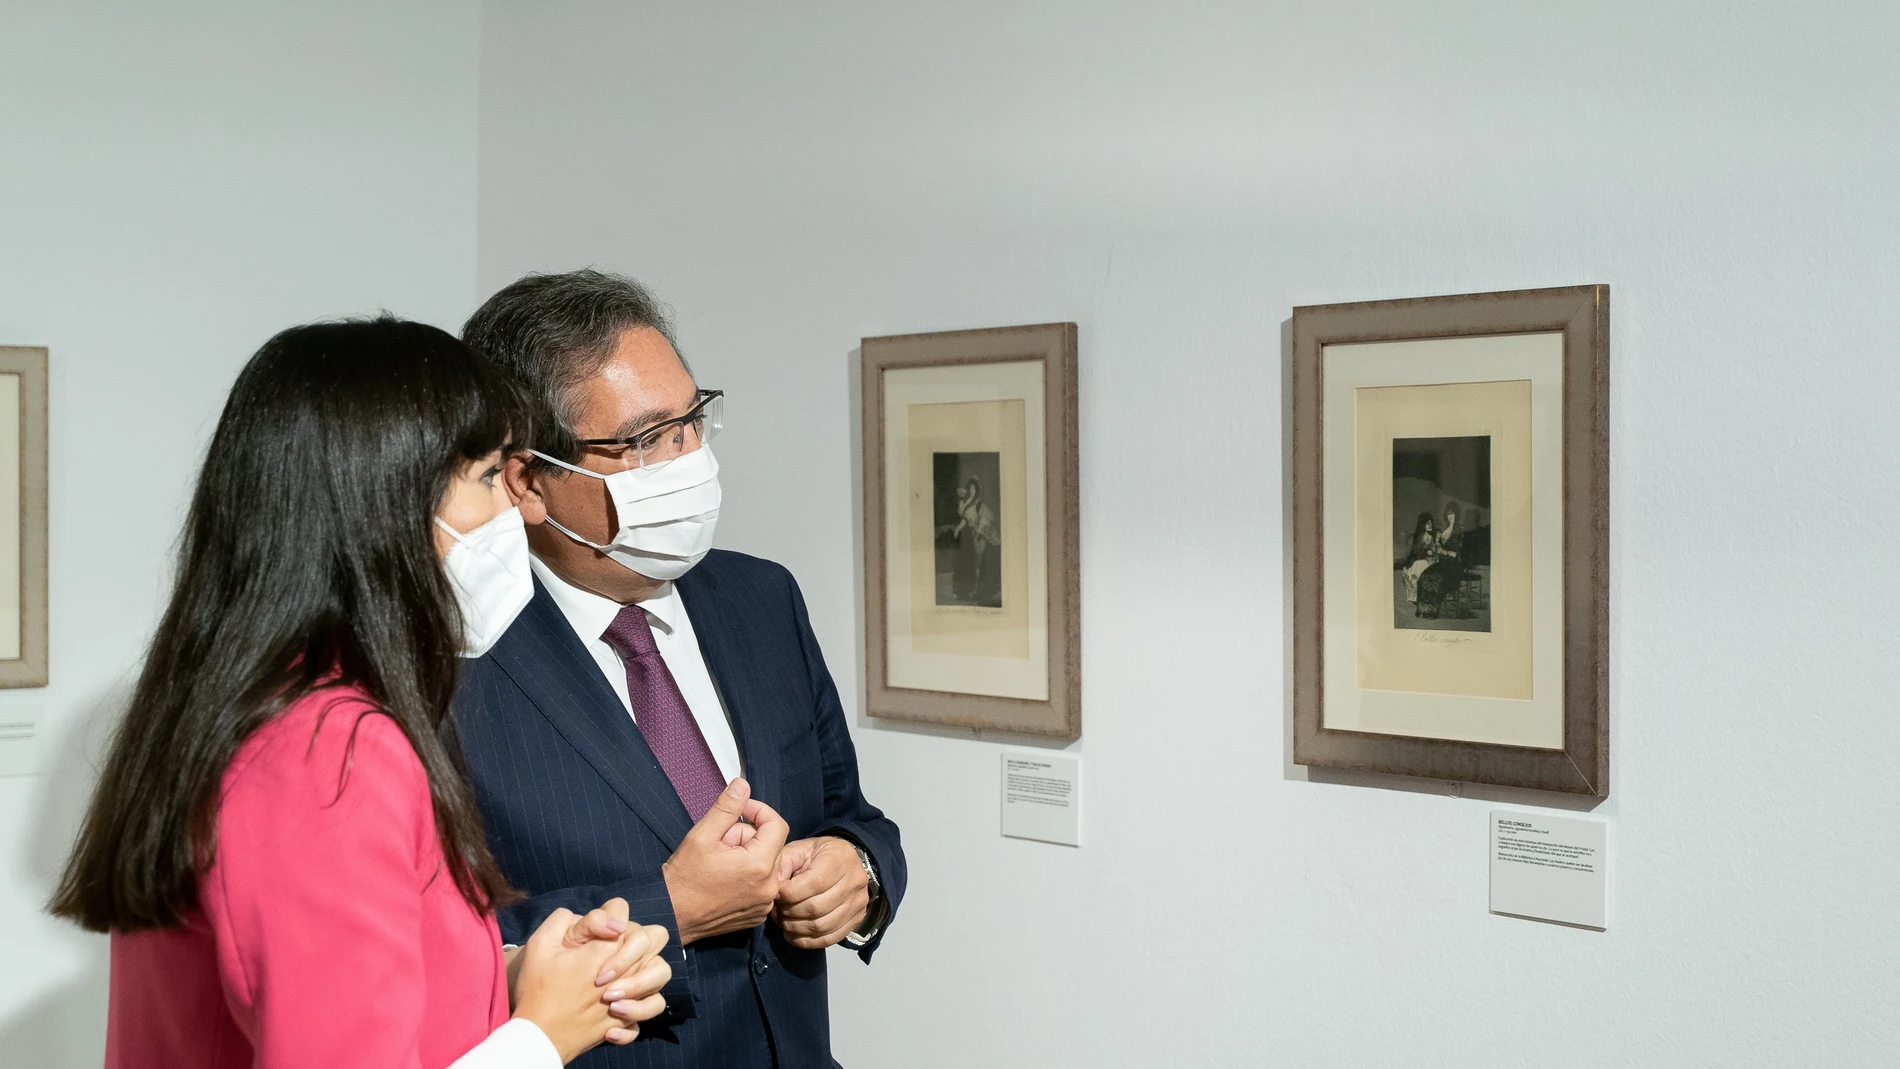 Inauguración de la exposición "Las mujeres De Goya" en la Fundación Cajasol